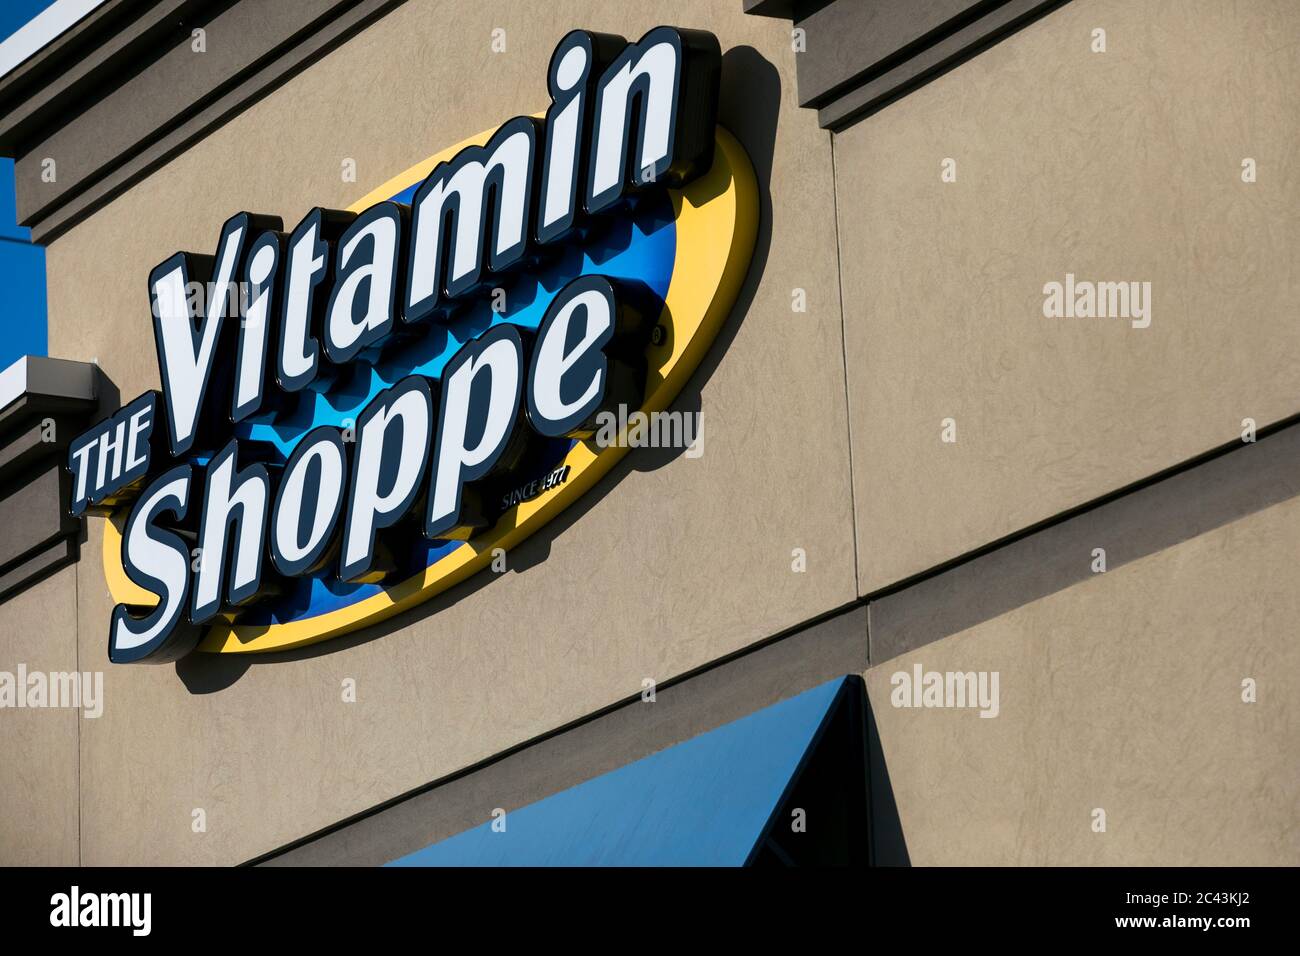 Un cartello con il logo all'esterno di un punto vendita al dettaglio Vitamin Shoppe a Gambrills, Maryland, l'8 giugno 2020. Foto Stock